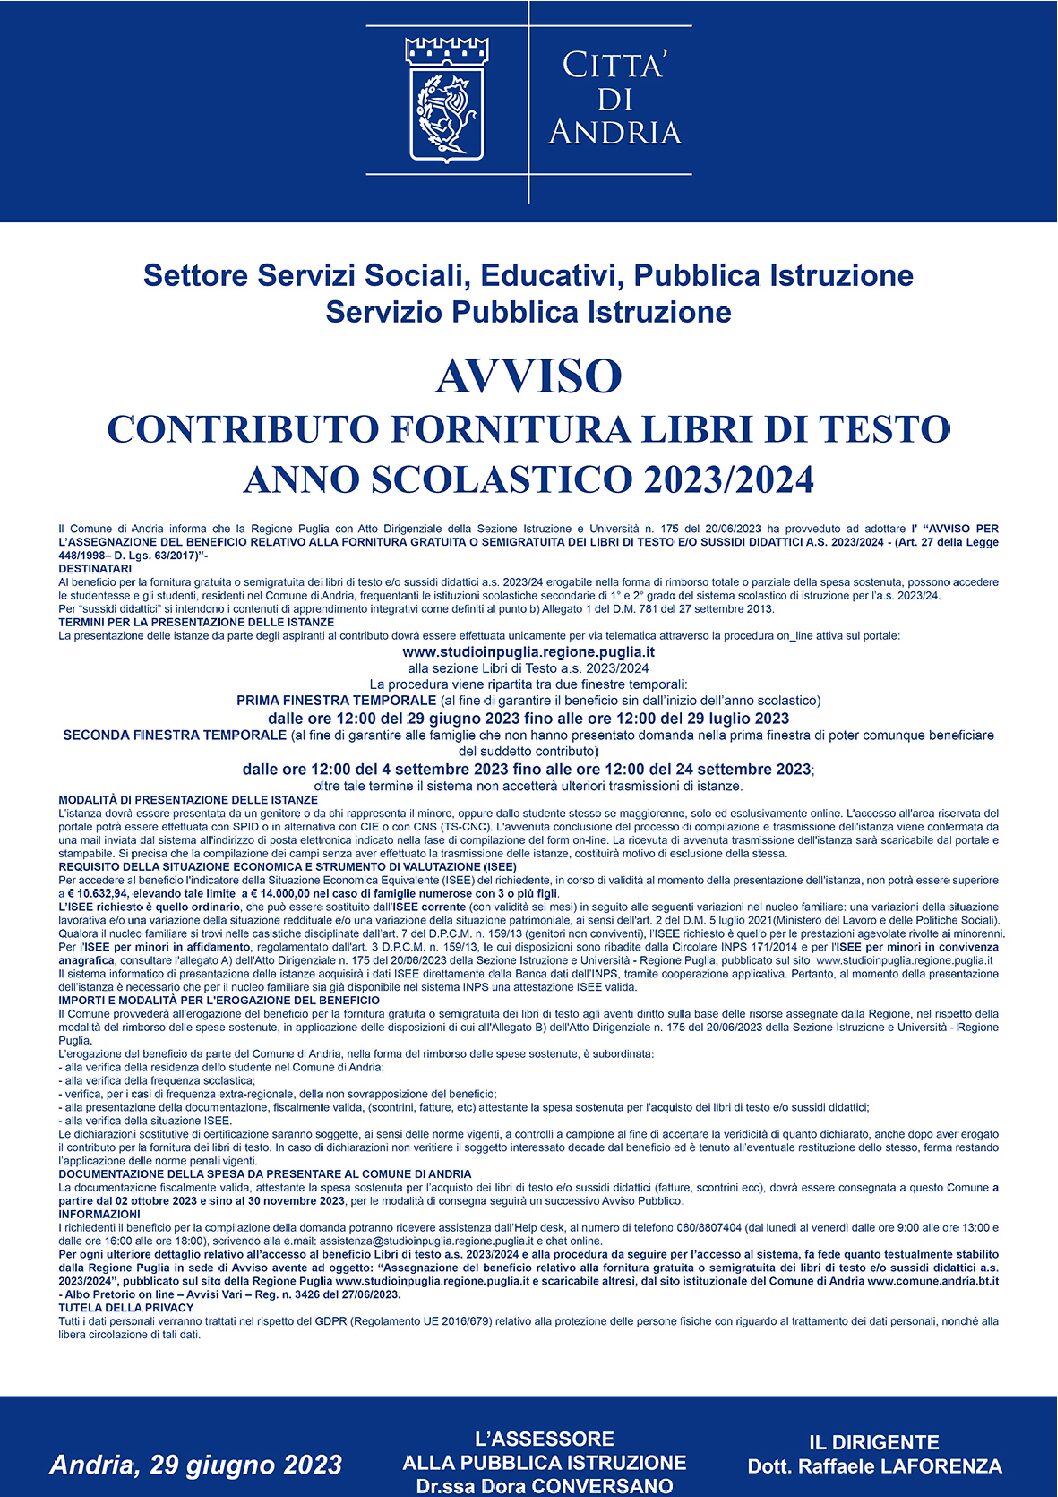 CONTRIBUTO FORNITURA LIBRI DI TESTO - ANNO SCOLASTICO 2023/2024